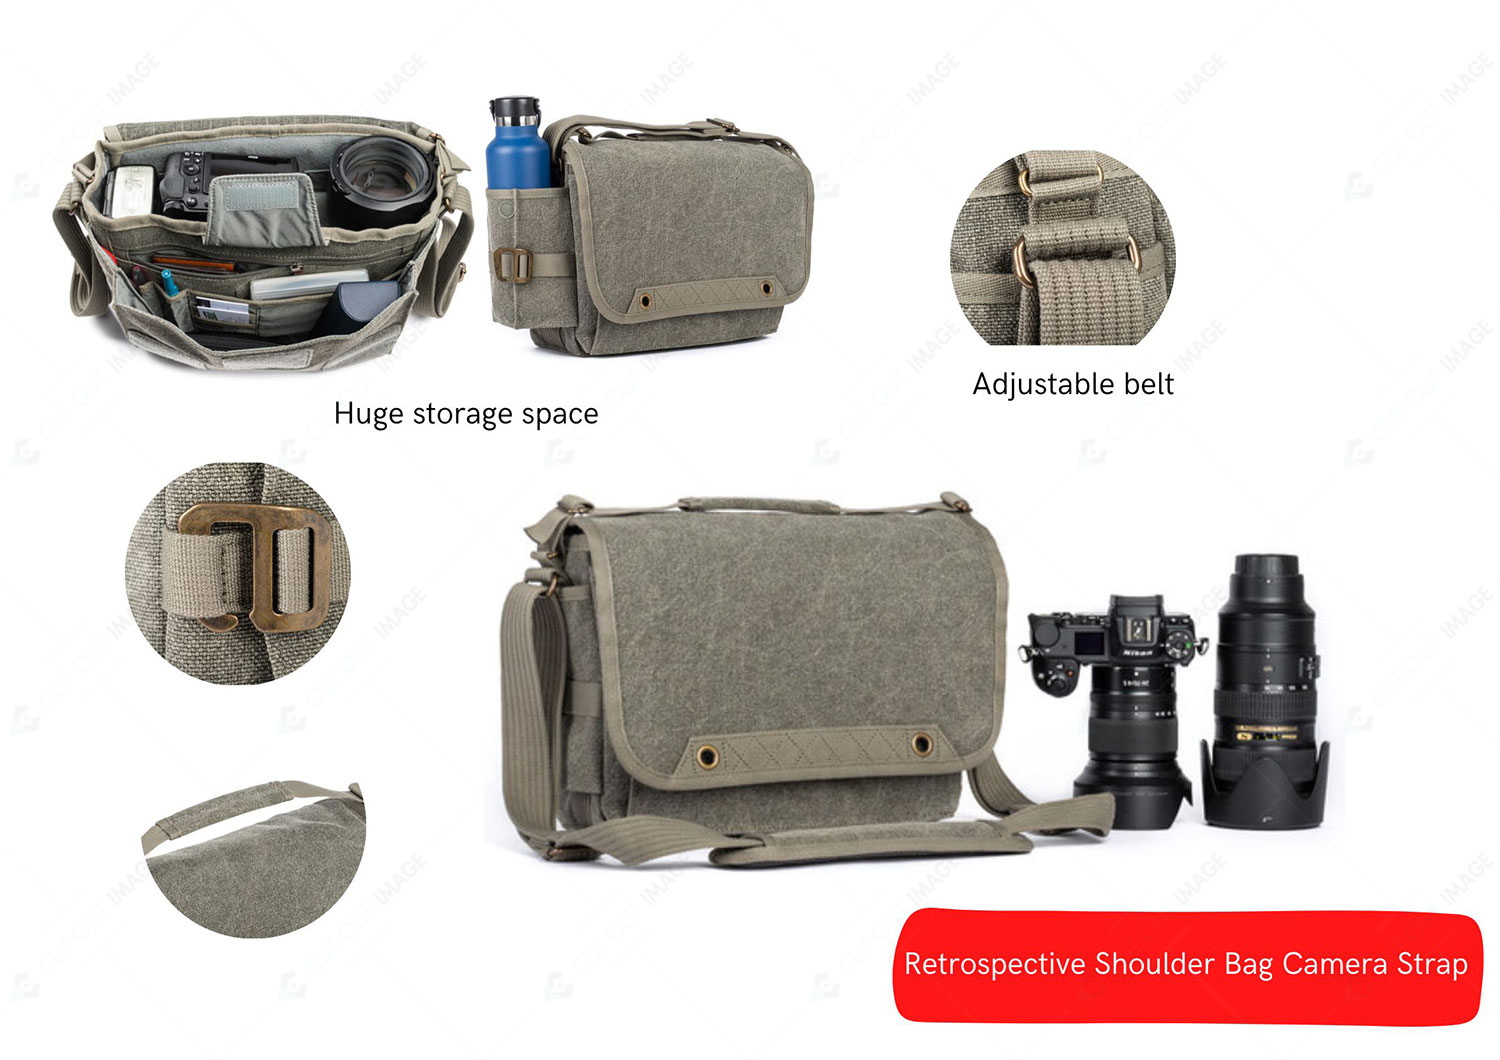 Think Tank Retrospective Shoulder Bag for Camera